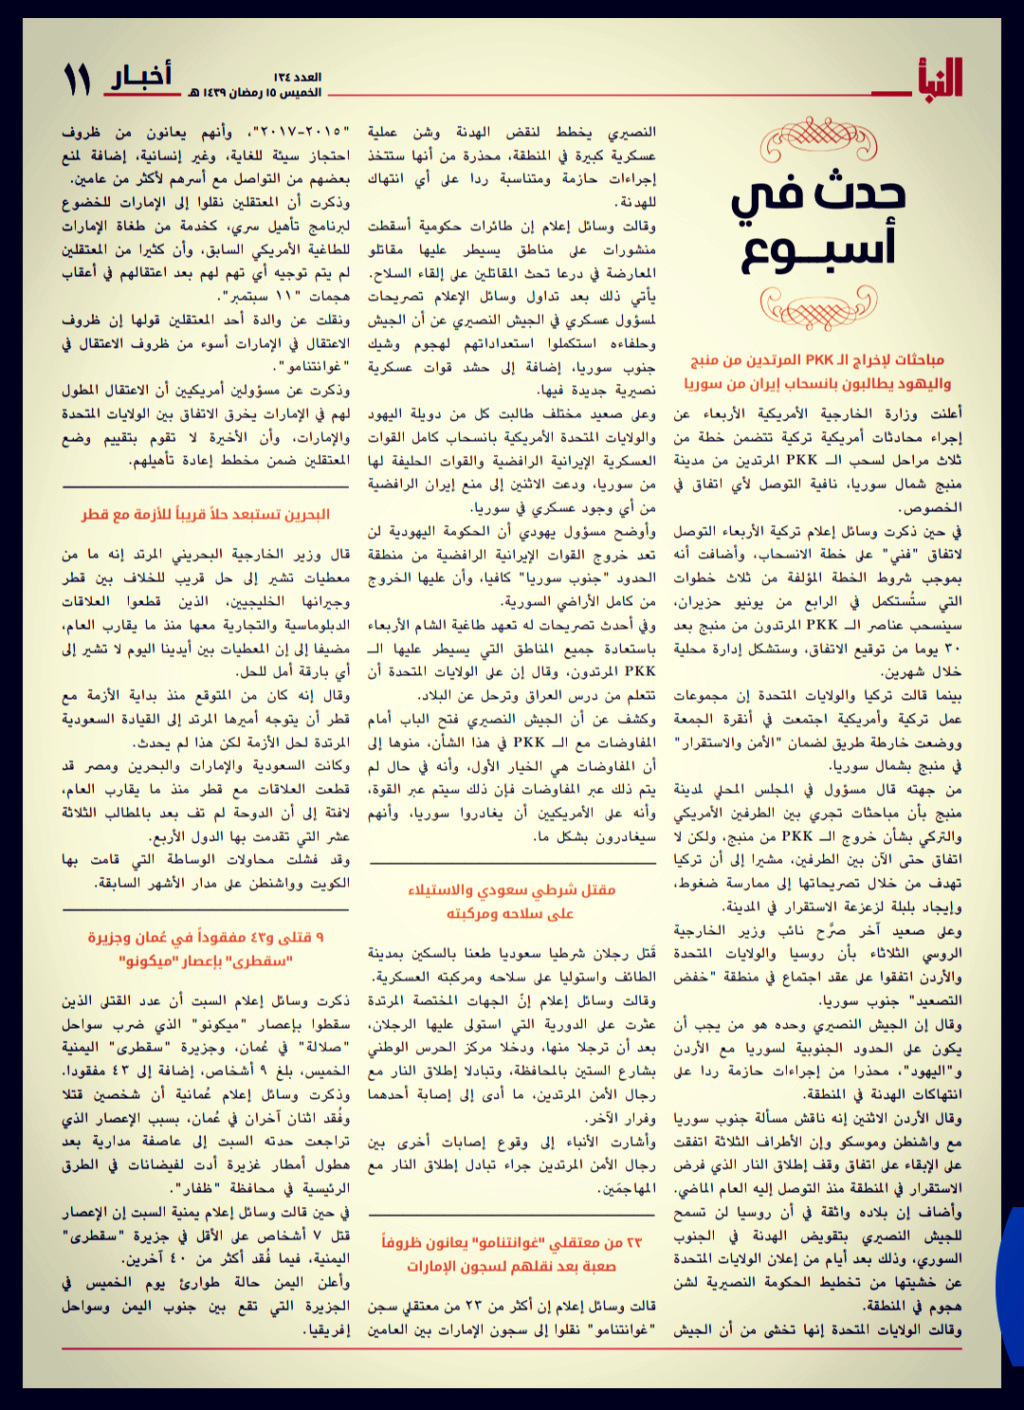 صحيفة النبأ - الاصدارات القديمة  - صفحة 2 964ab810